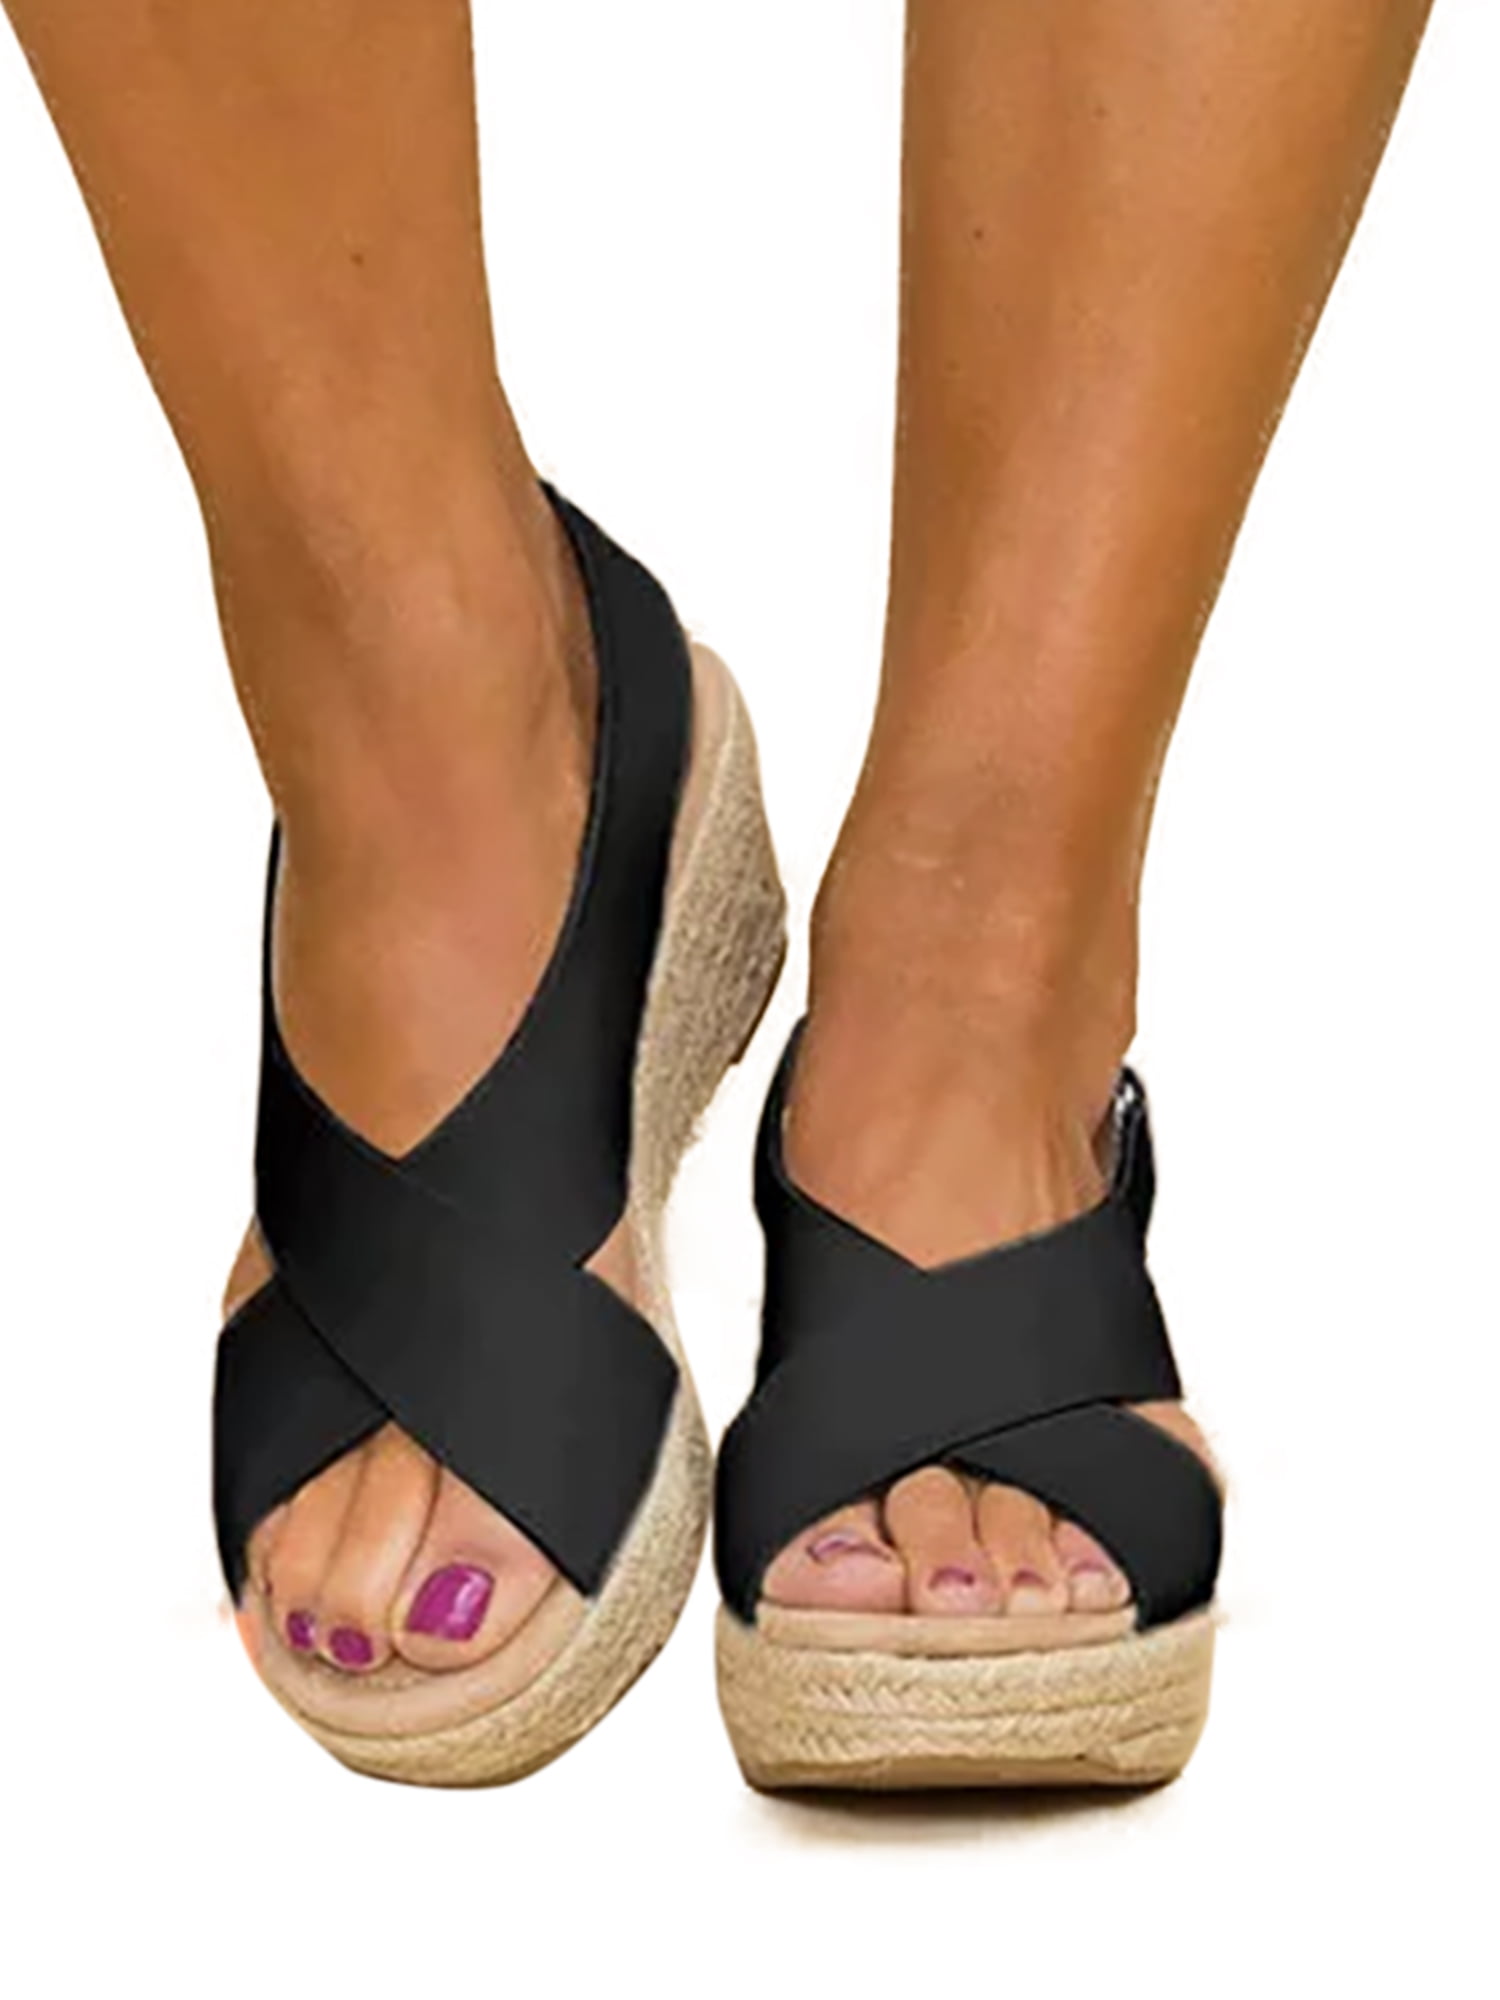 Details about   Ladies Women Ankle Strap High Heel Wedge Espadrilles Platform Sandals Shoes Sz B 